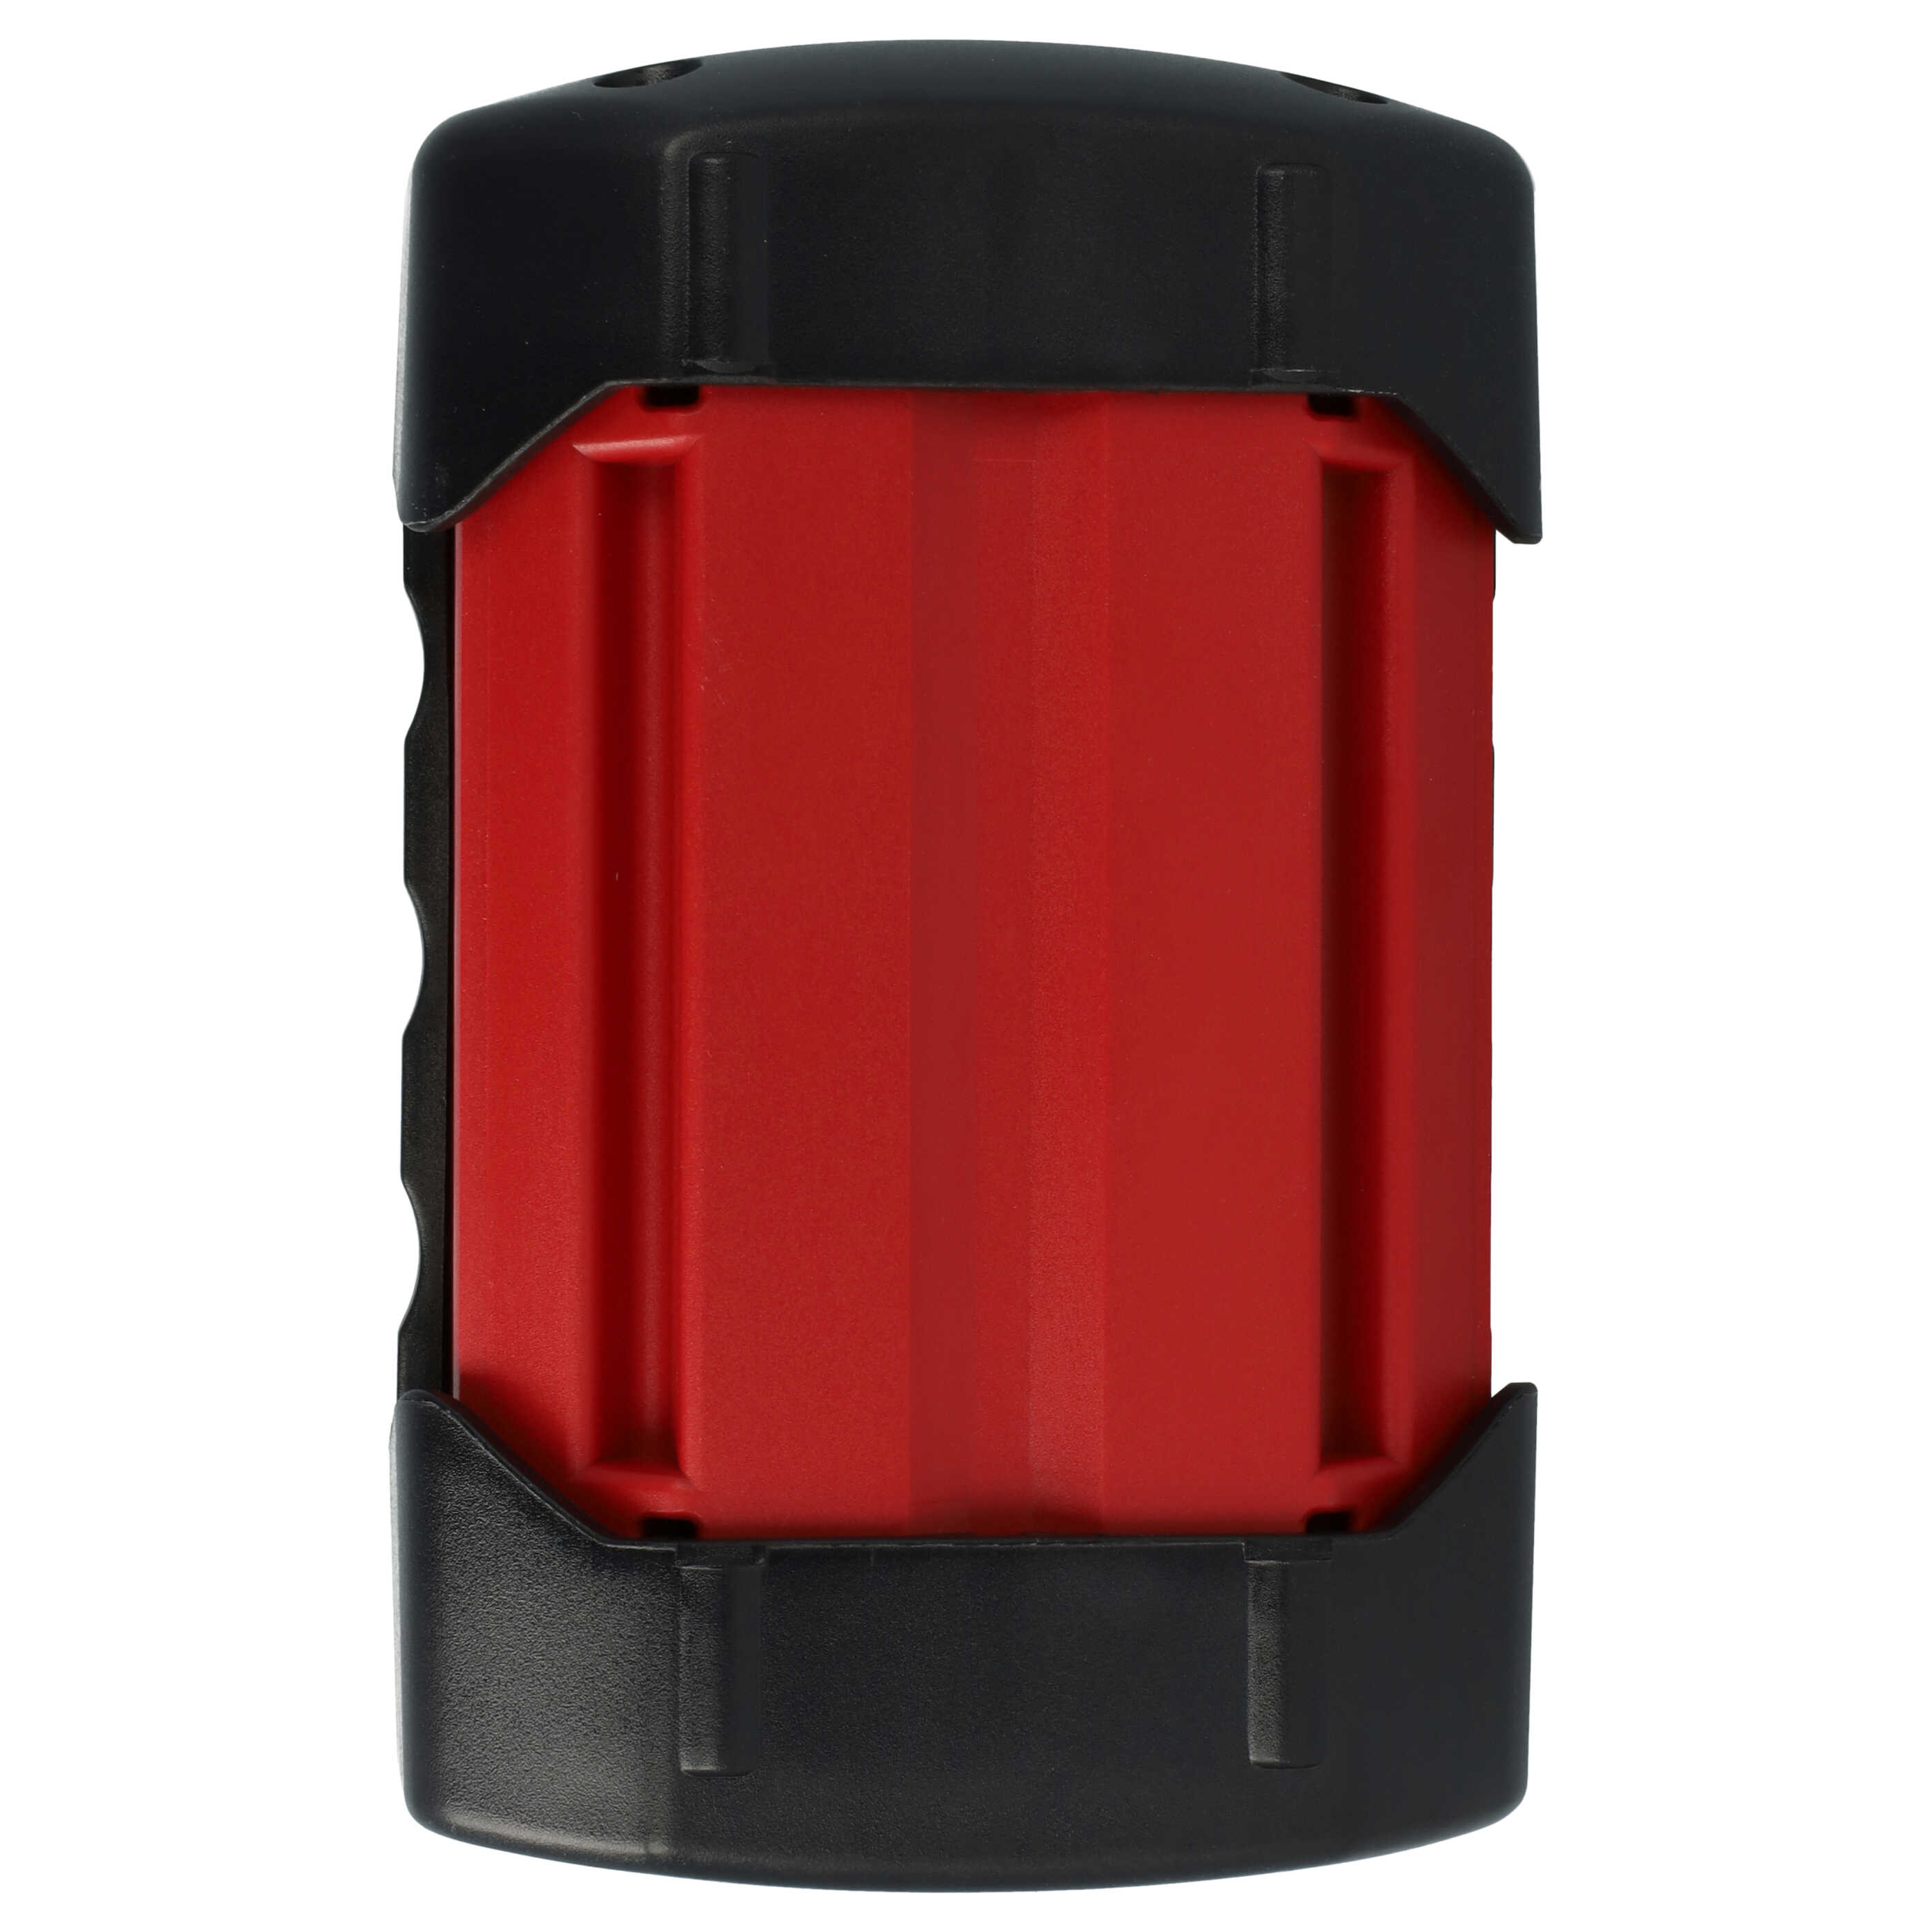 Akumulator do robota koszącego zamiennik Bosch 1600A0022N - 5000 mAh 36 V Li-Ion, czarny / czerwony